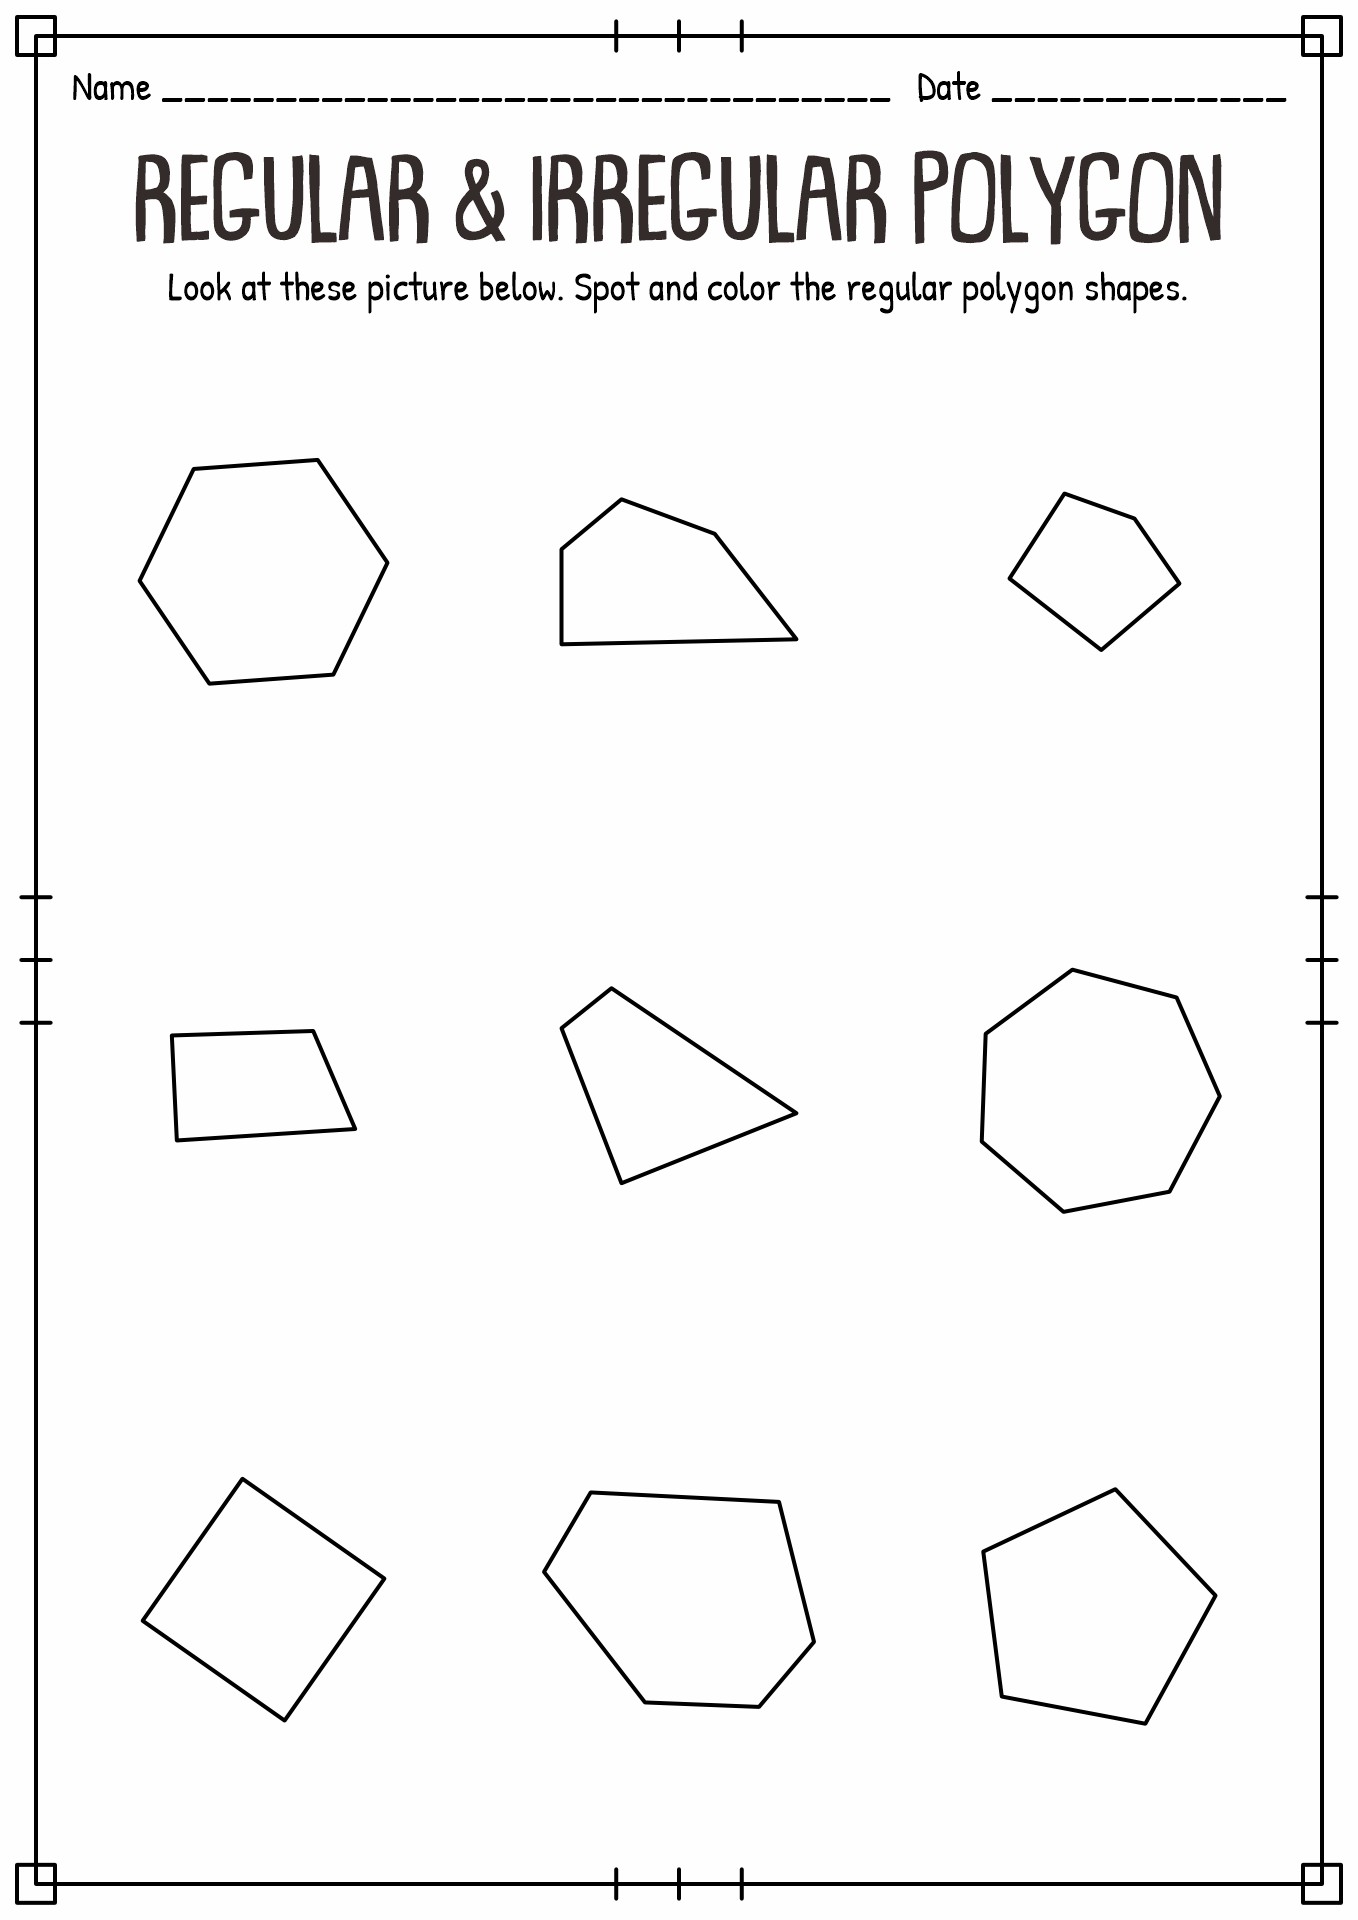 11 Best Images of Regular Polygon Shapes Worksheet - All Polygon Shapes ...